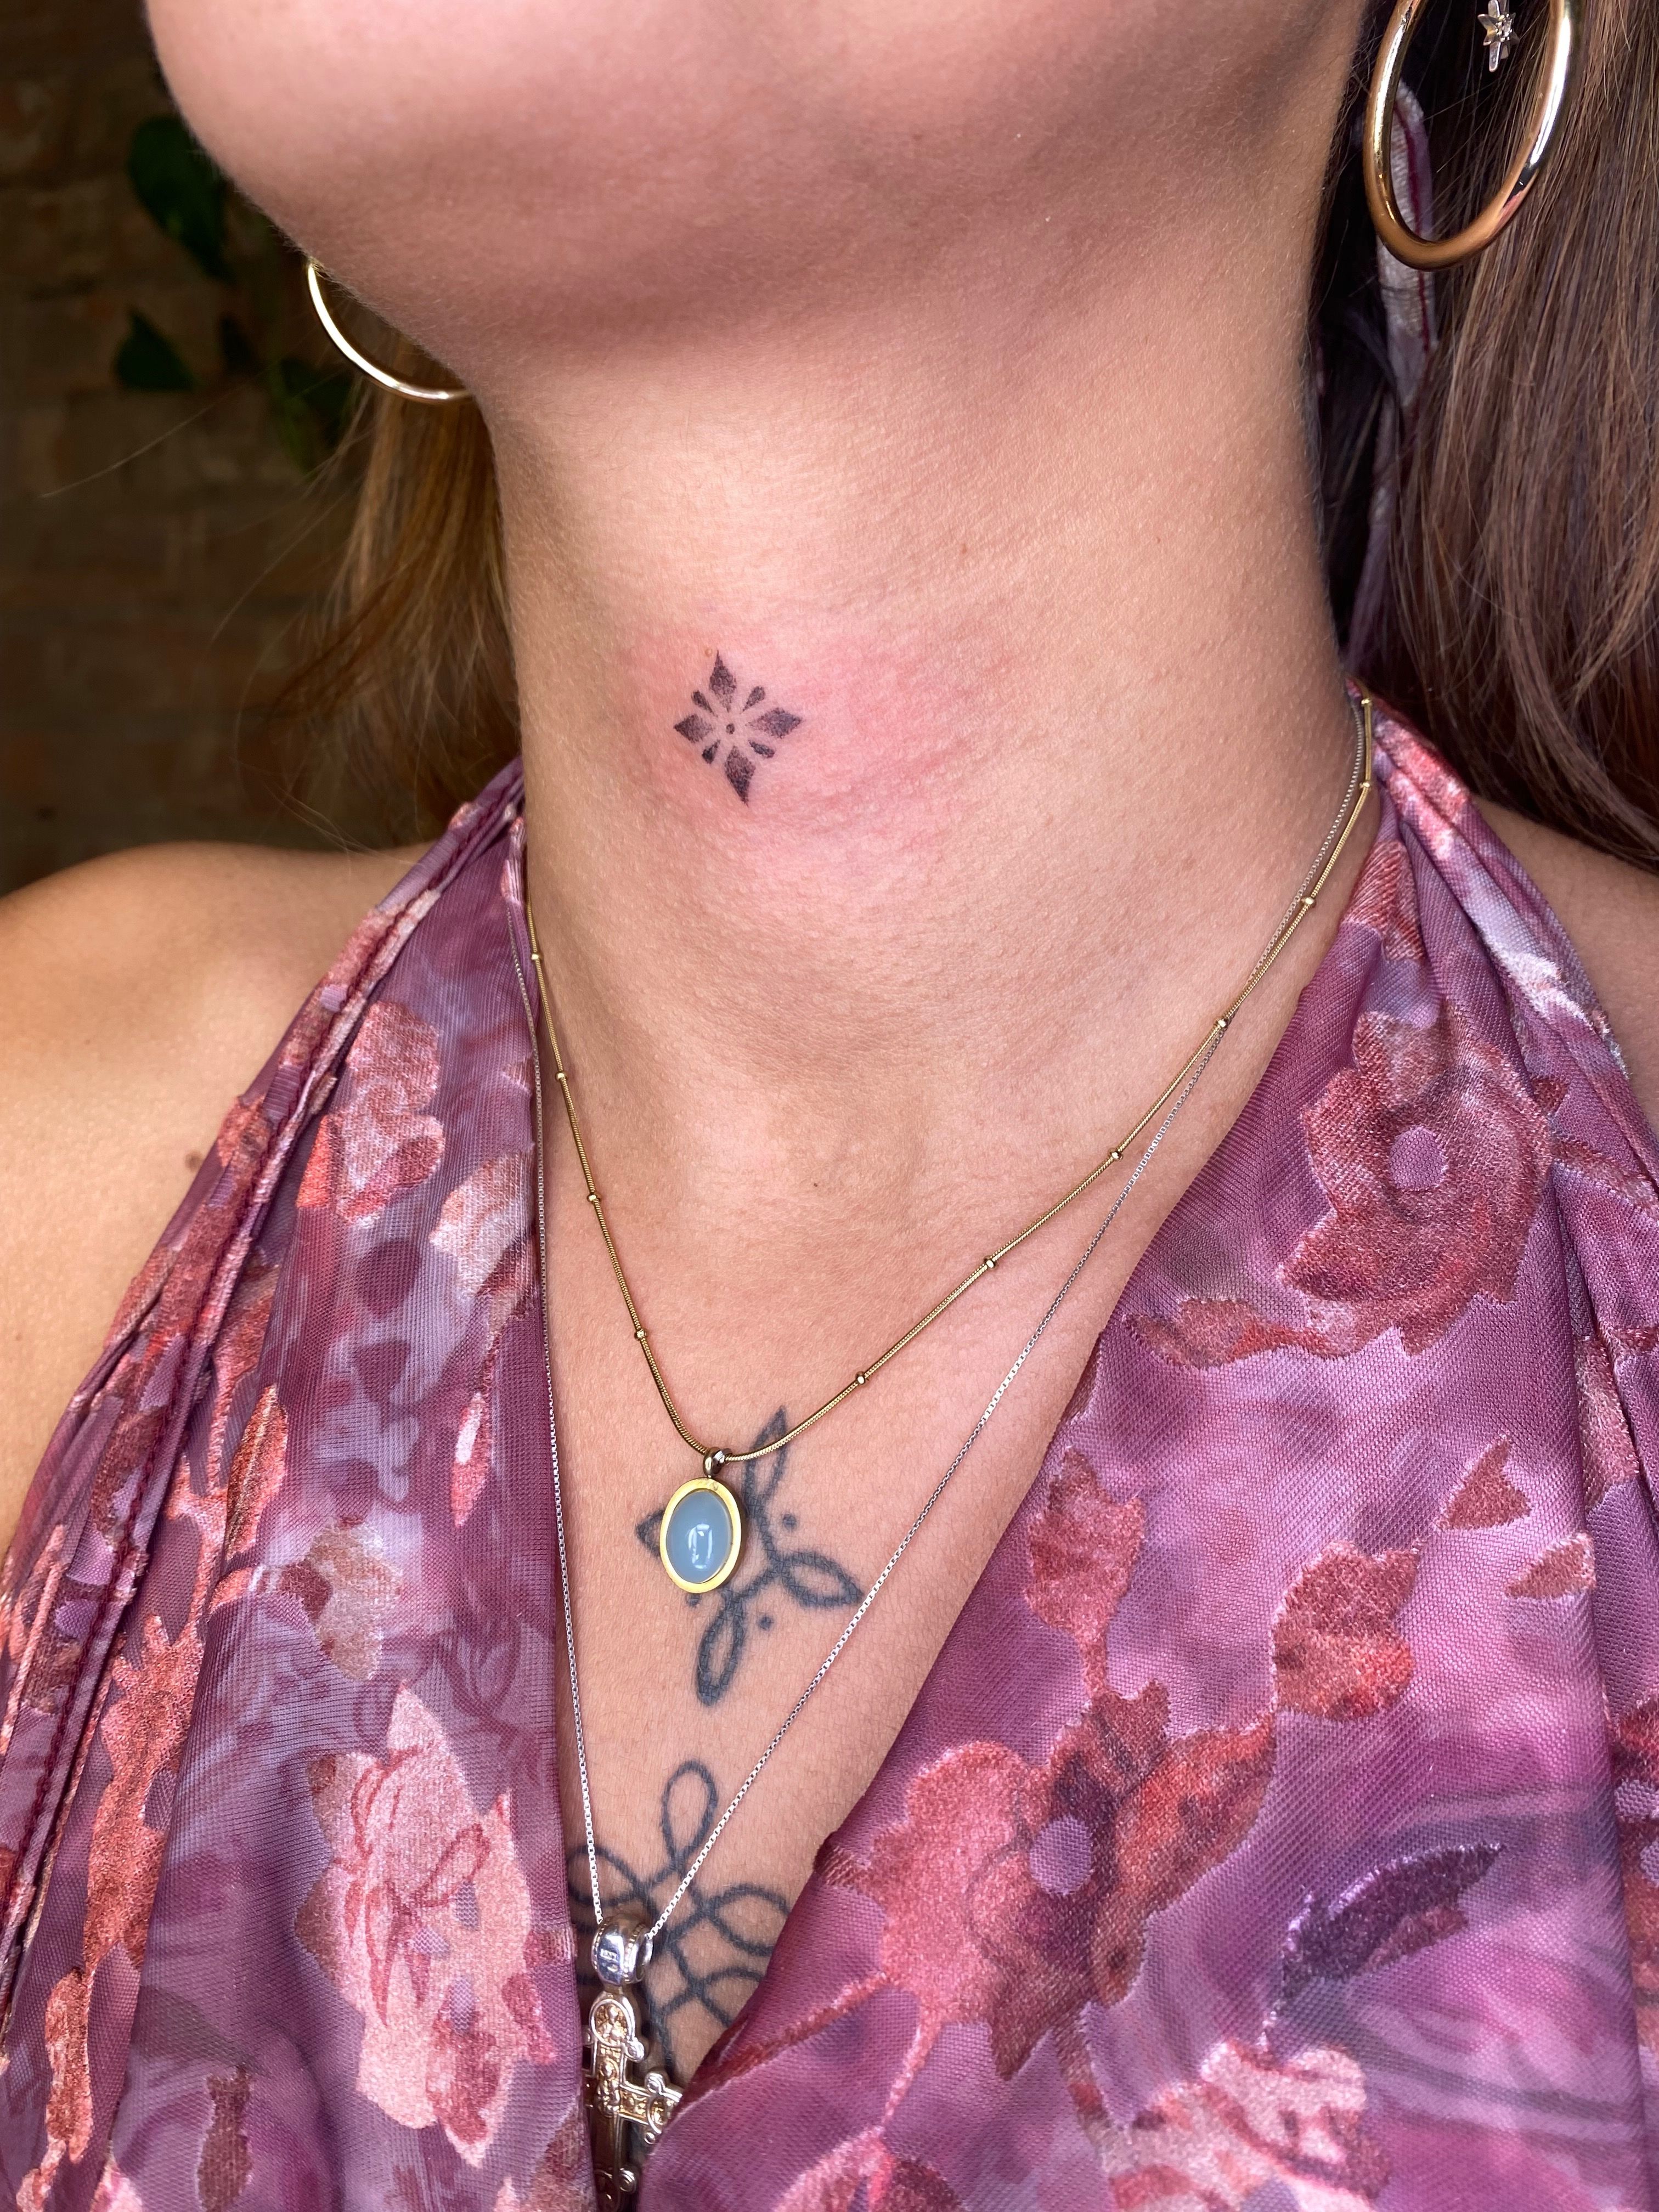 Throat Collar Tattoo 💜 #tattooed #Tattoo #tattoos #tattooedgirls  #tattooedwomen #girlswithtattoos #tattoosofinstagram #ink #inked #in... |  Instagram